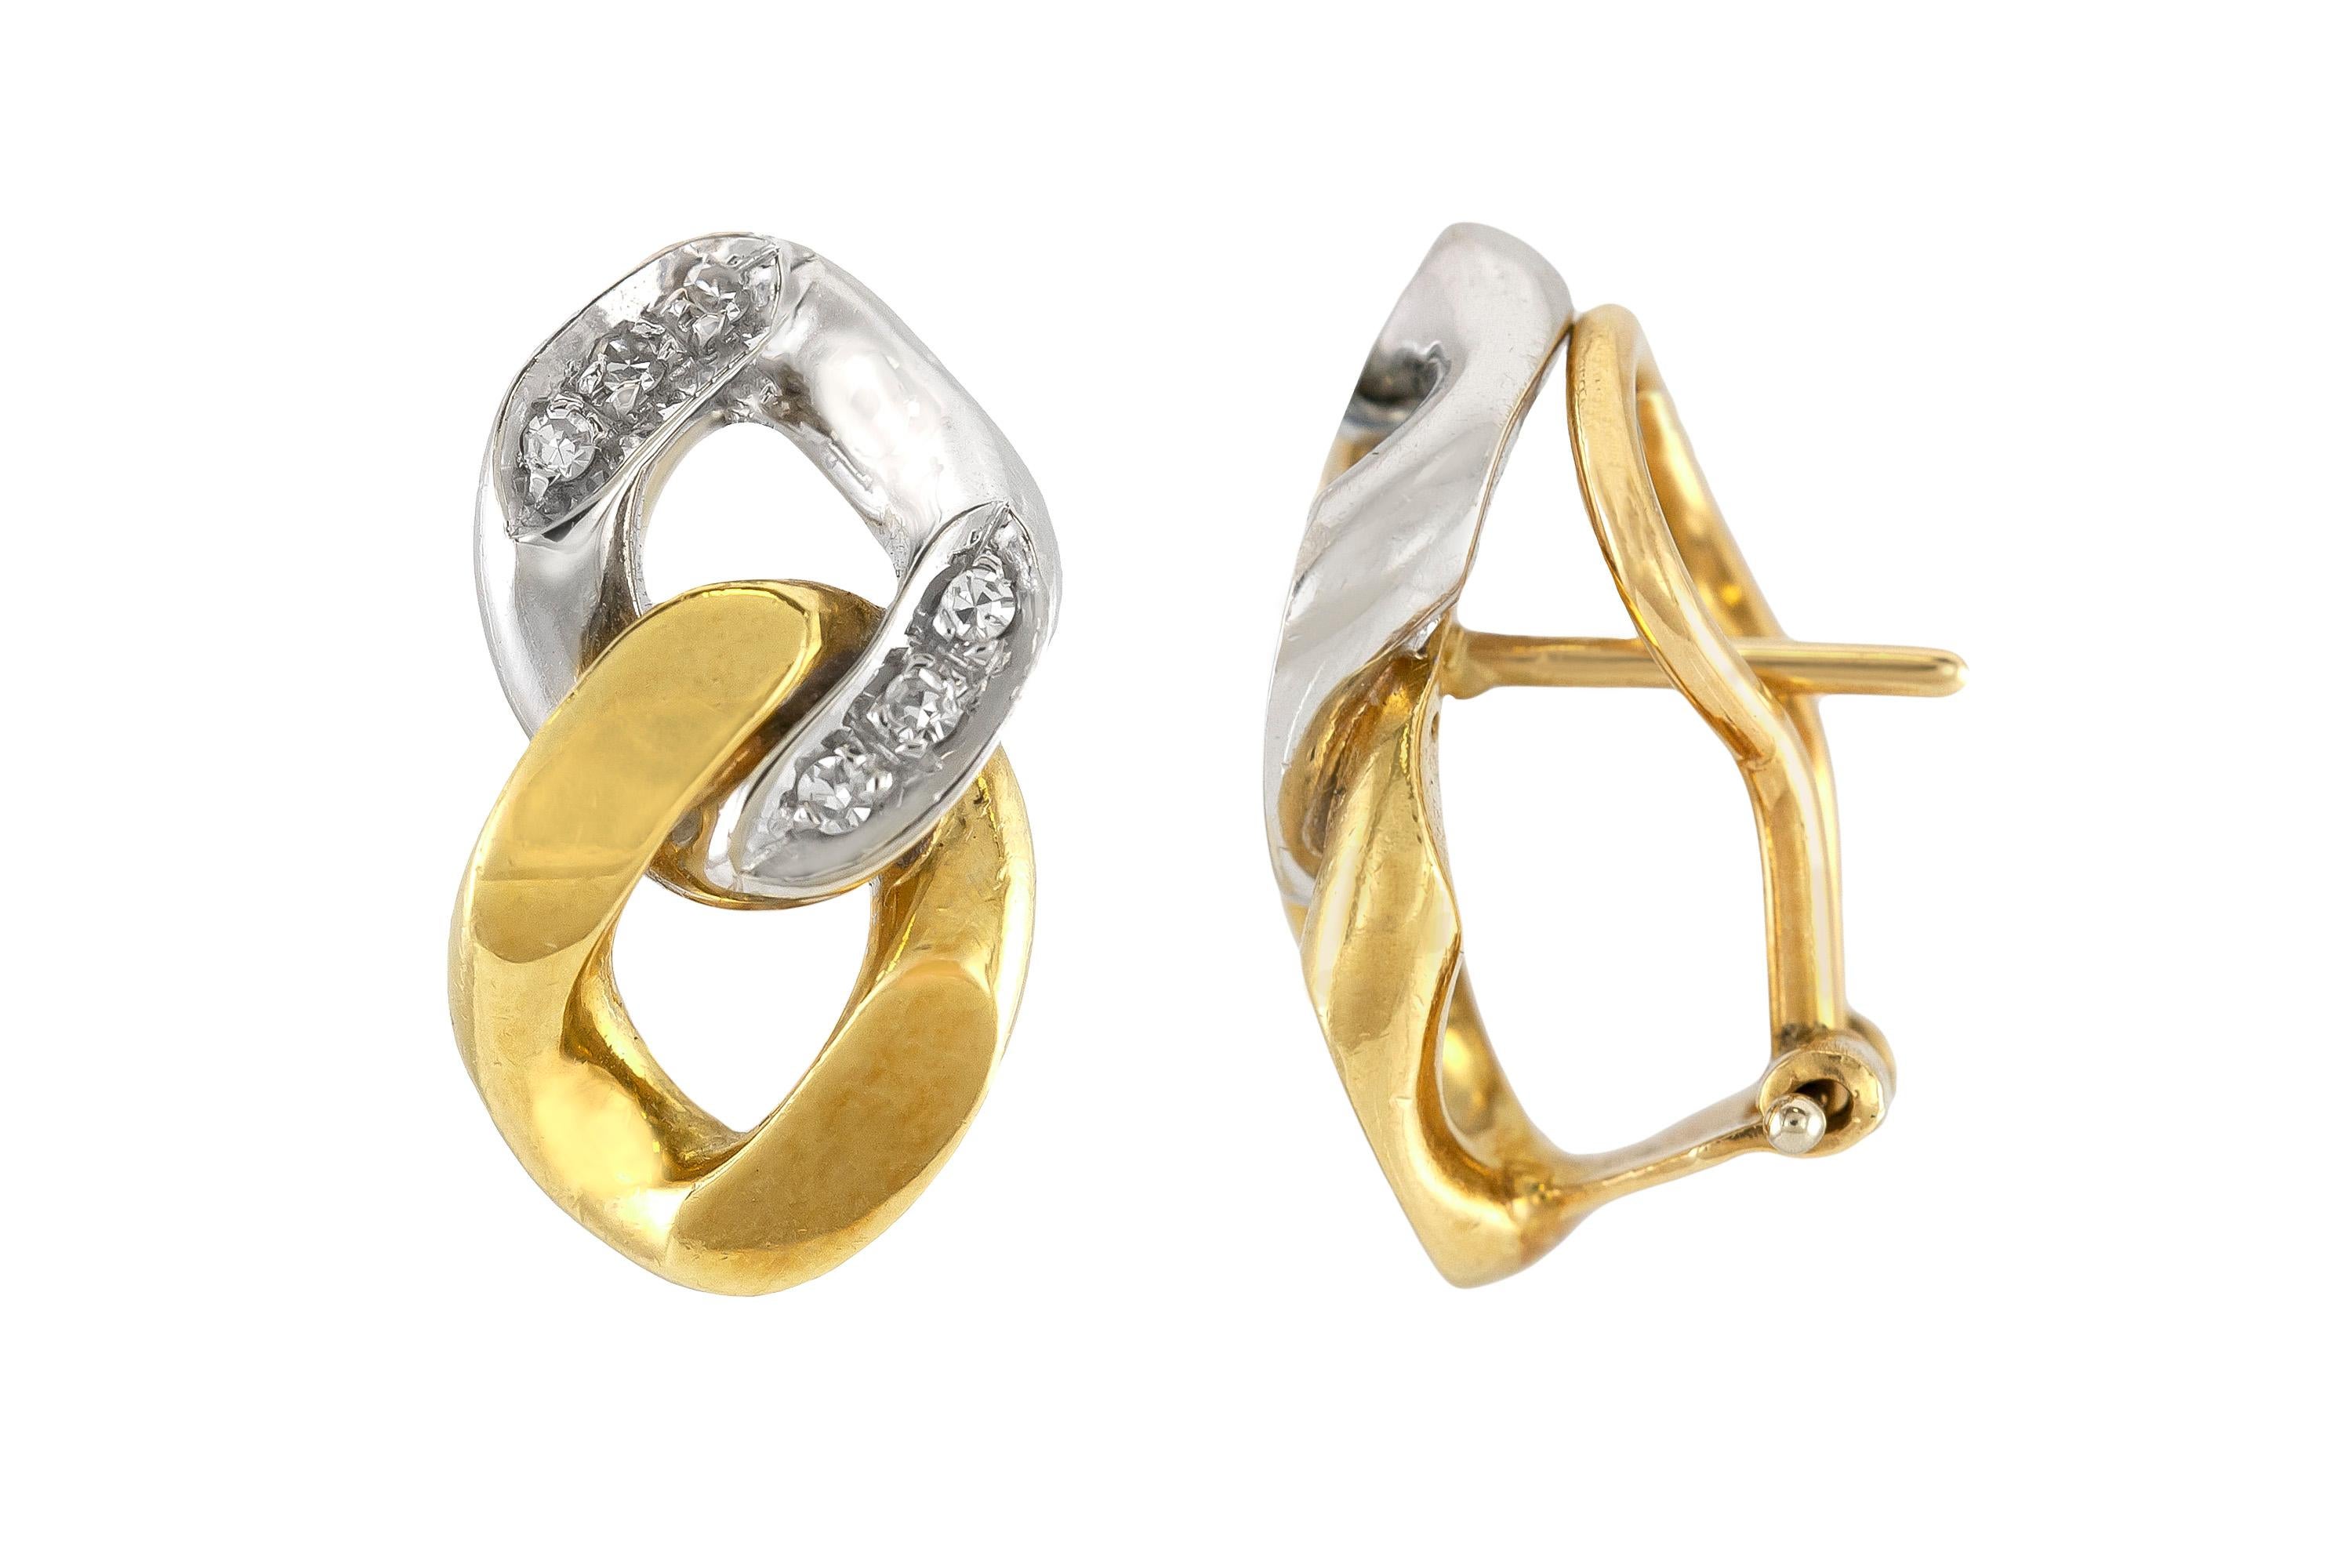 Les boucles d'oreilles sont finement travaillées en or jaune et blanc 18 carats, pesant 8.9 dwt., avec des diamants pesant un total de 0.50 carat. 
Circa 1970.

